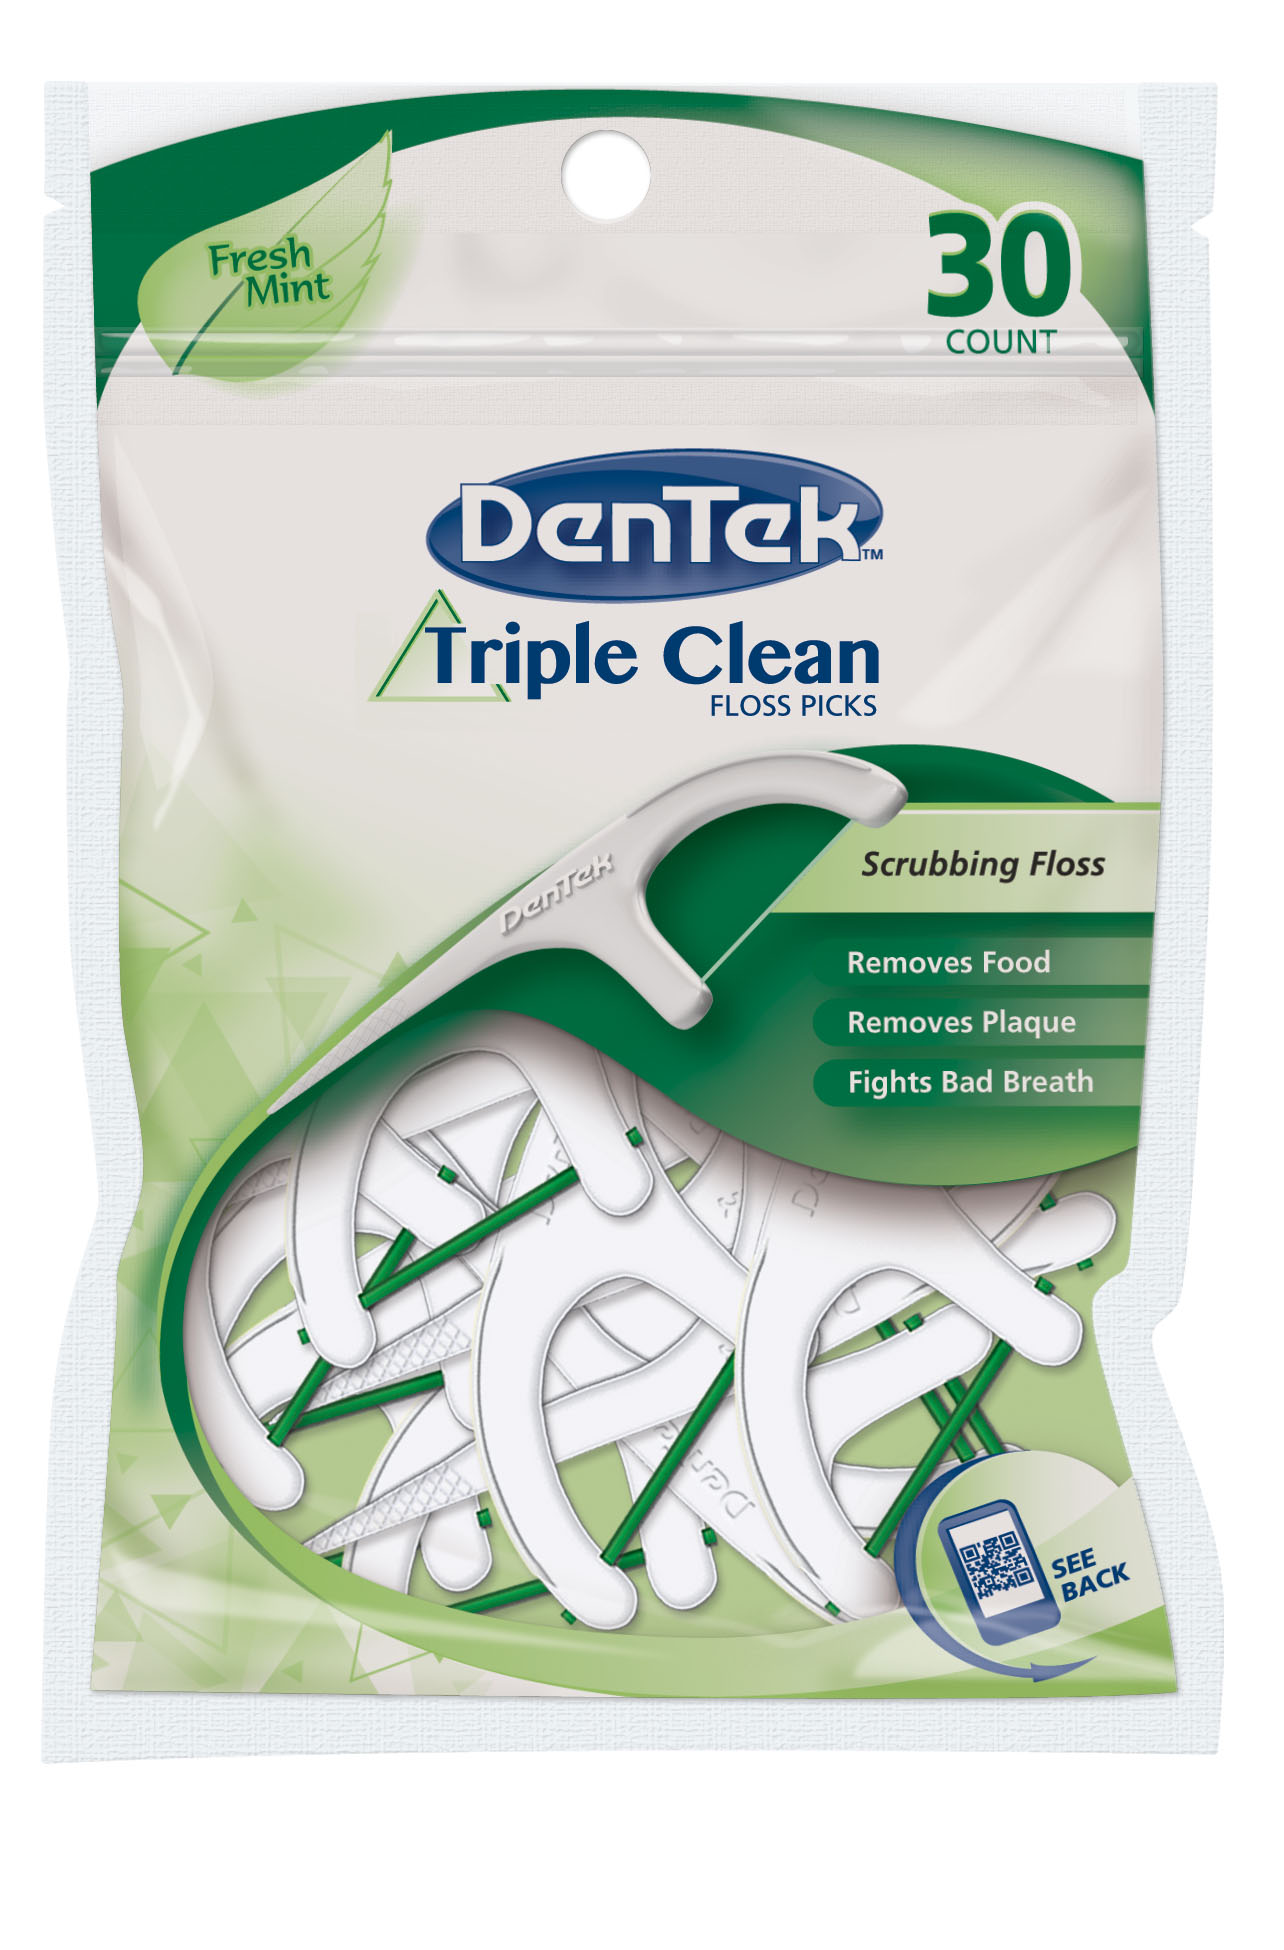 DenTek's Triple Clean Floss Picks